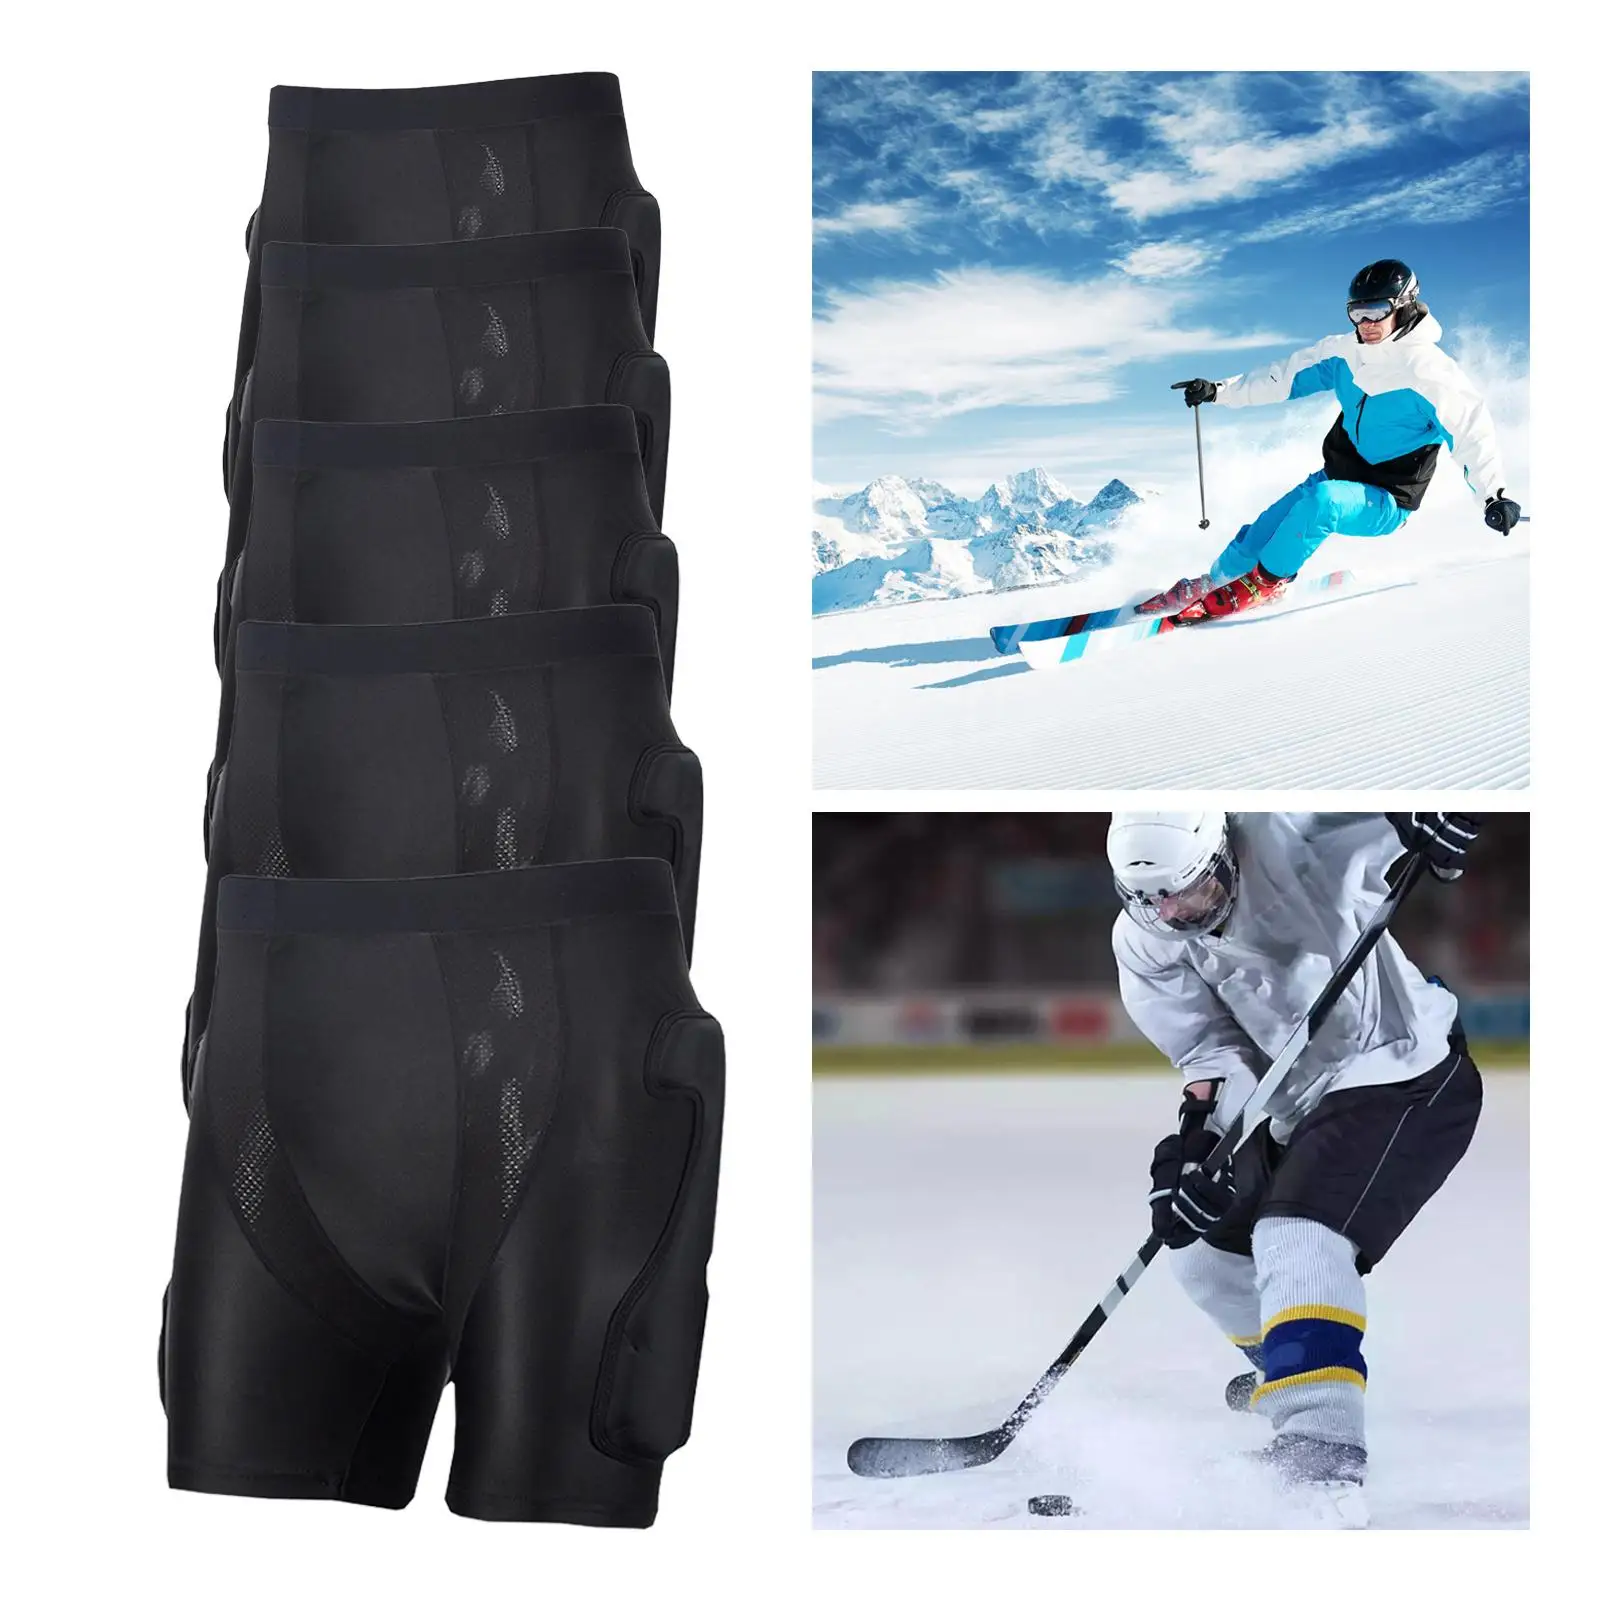 Protective Padded Shorts Skating Impact Pad Multifunction Tailbone Protection Pants for Skiing Skating Snowboard Riding Unisex